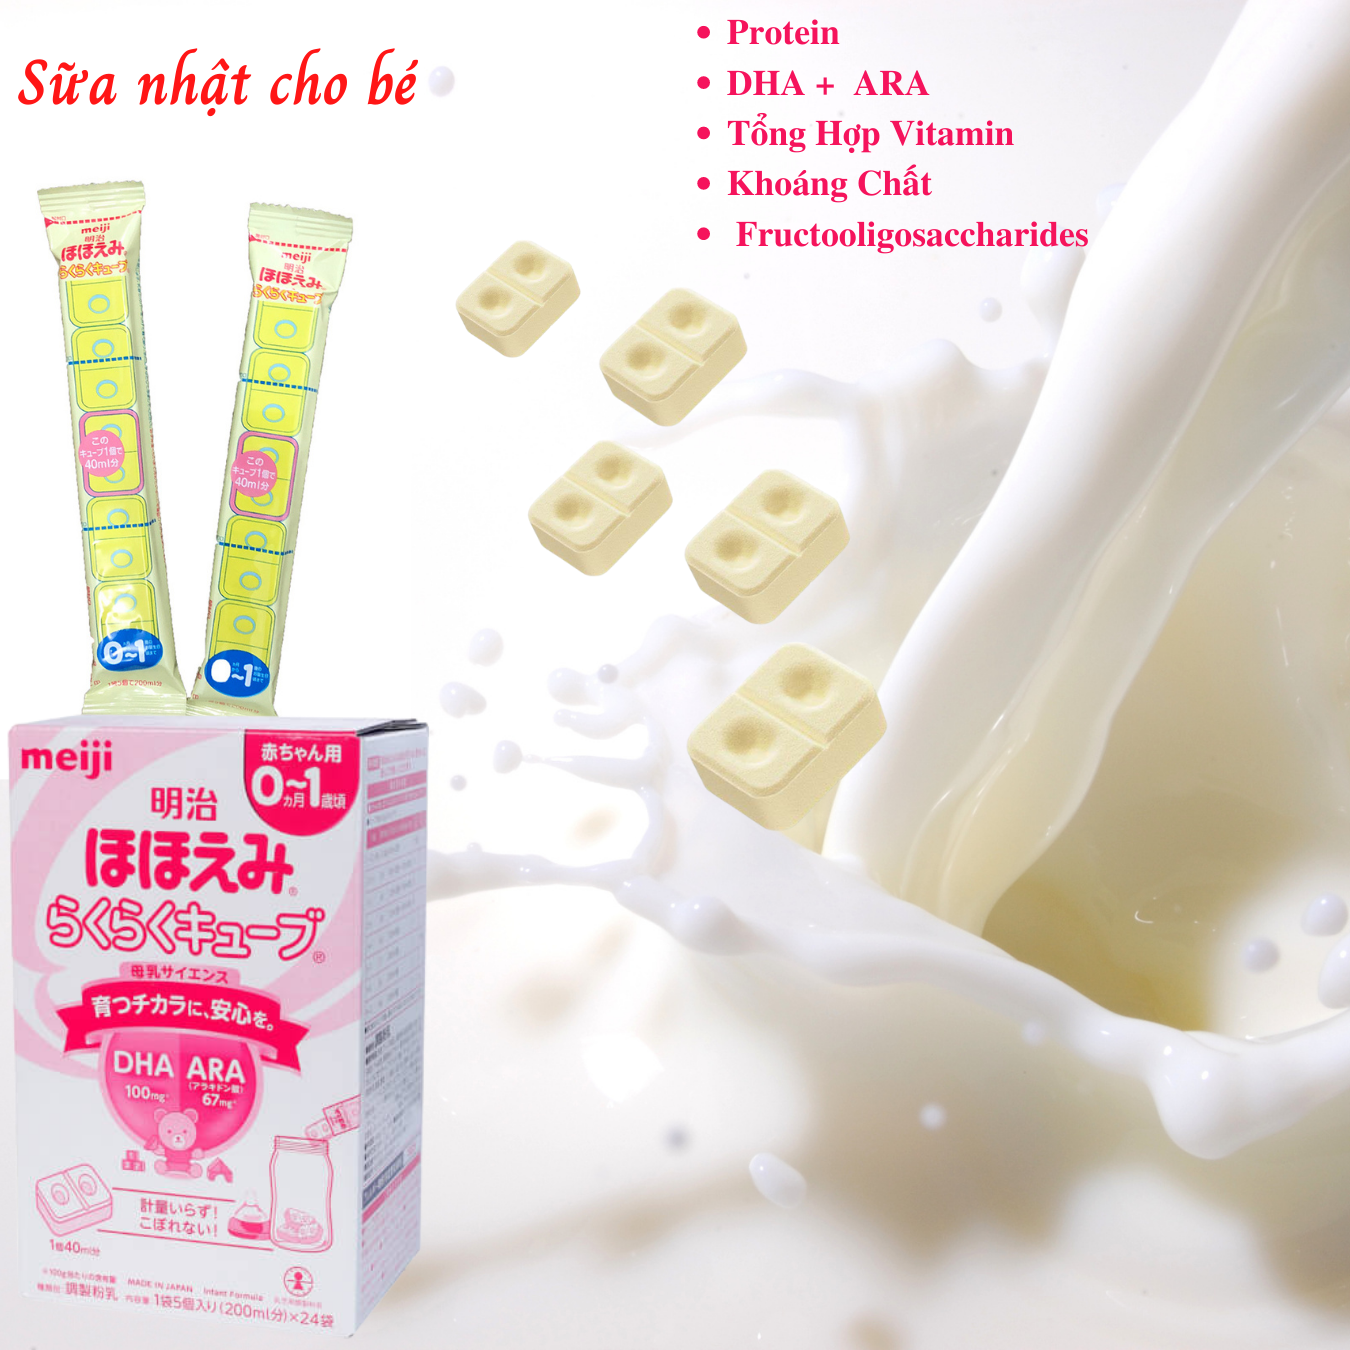 Sữa cho trẻ 1 - 3 tuổi Meiji Nhật giàu dưỡng chất kèm DHA giúp phát triển cân đối chiều cao, cân nặng, trí não trẻ - Massel Official